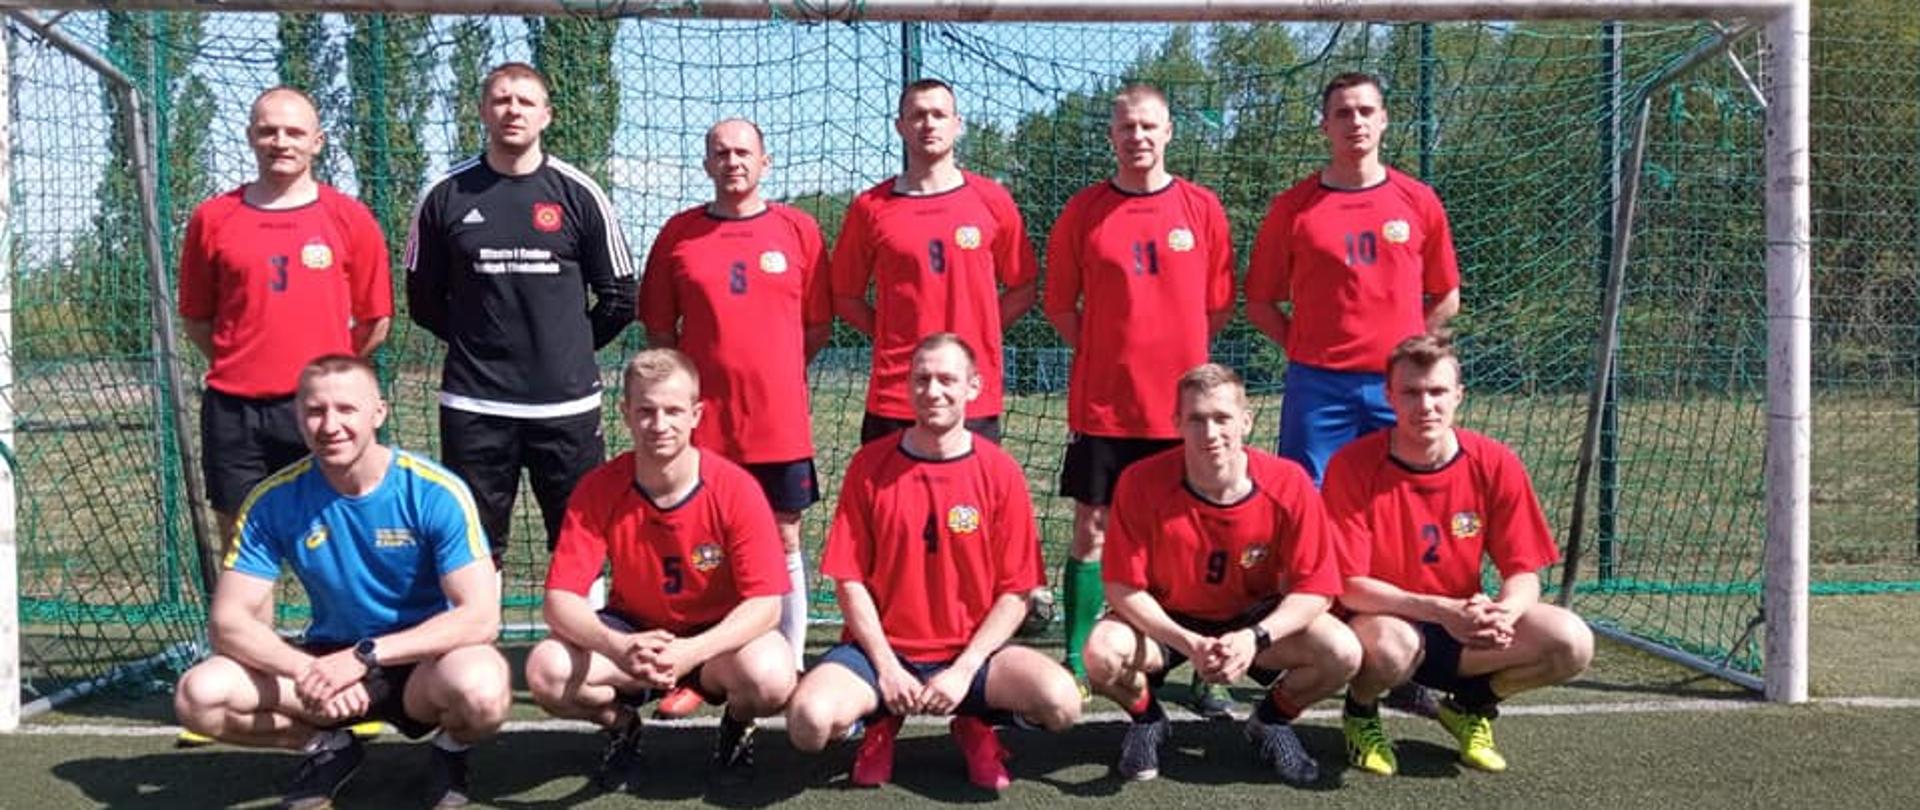 Zdjęcie przedstawia 11-osobową męska drużynę piłkarską pozującą do zdjęcia w czerwonych strojach sportowych na tle bramki piłkarskiej.